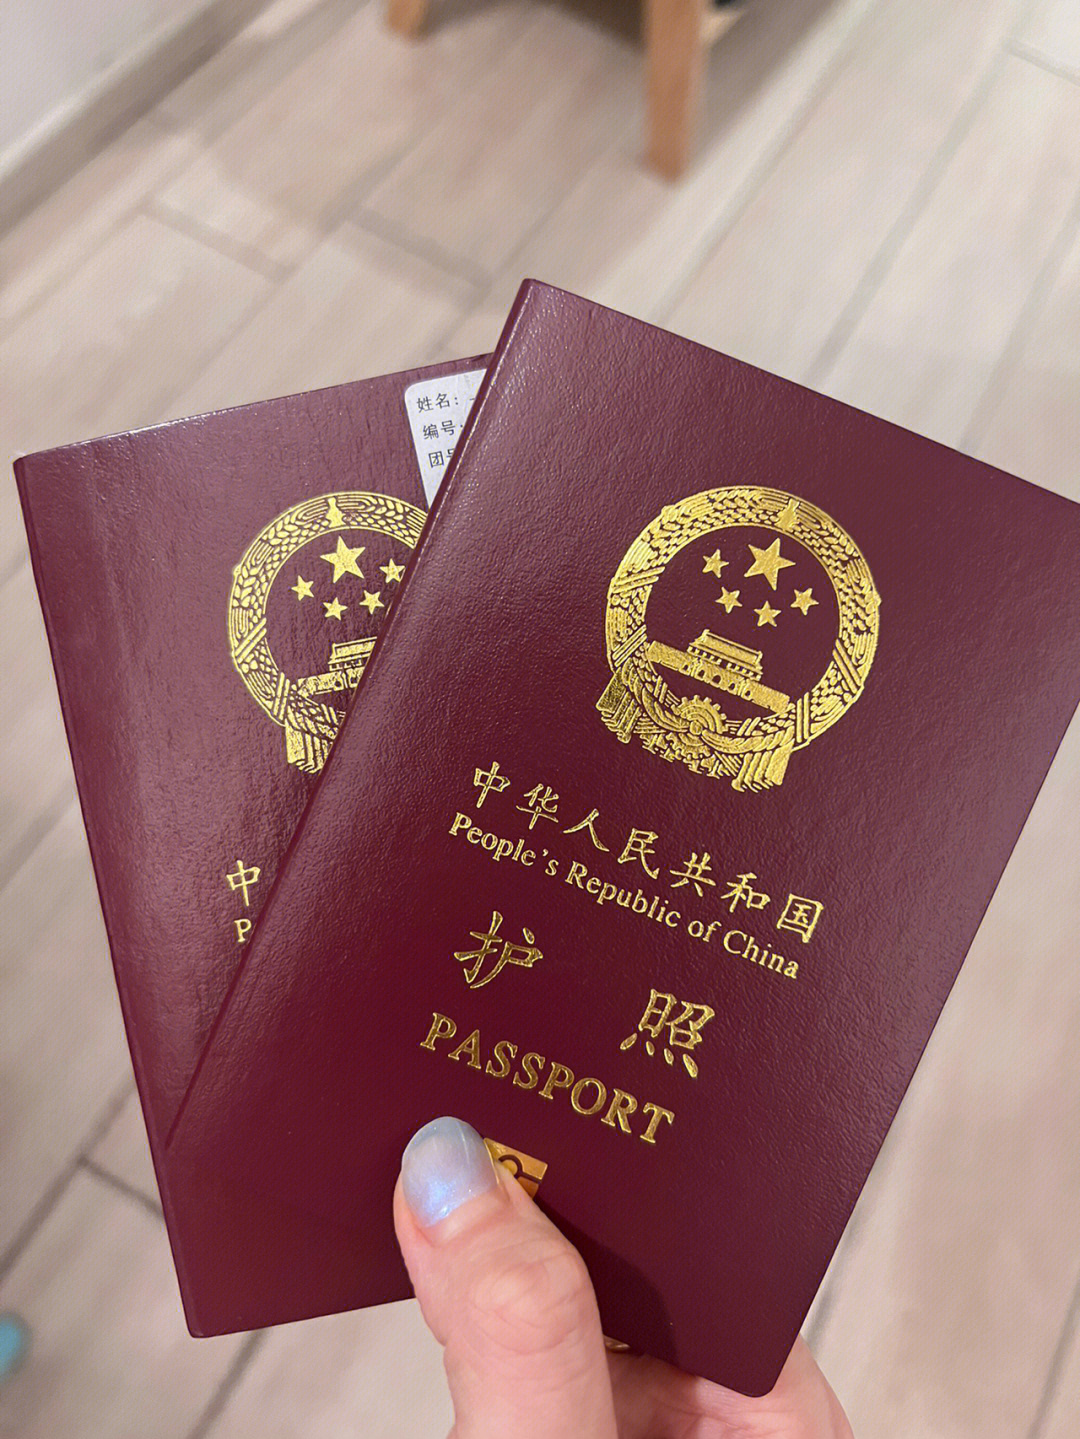 在新加坡历时十四天终于拿到我的新护照了!